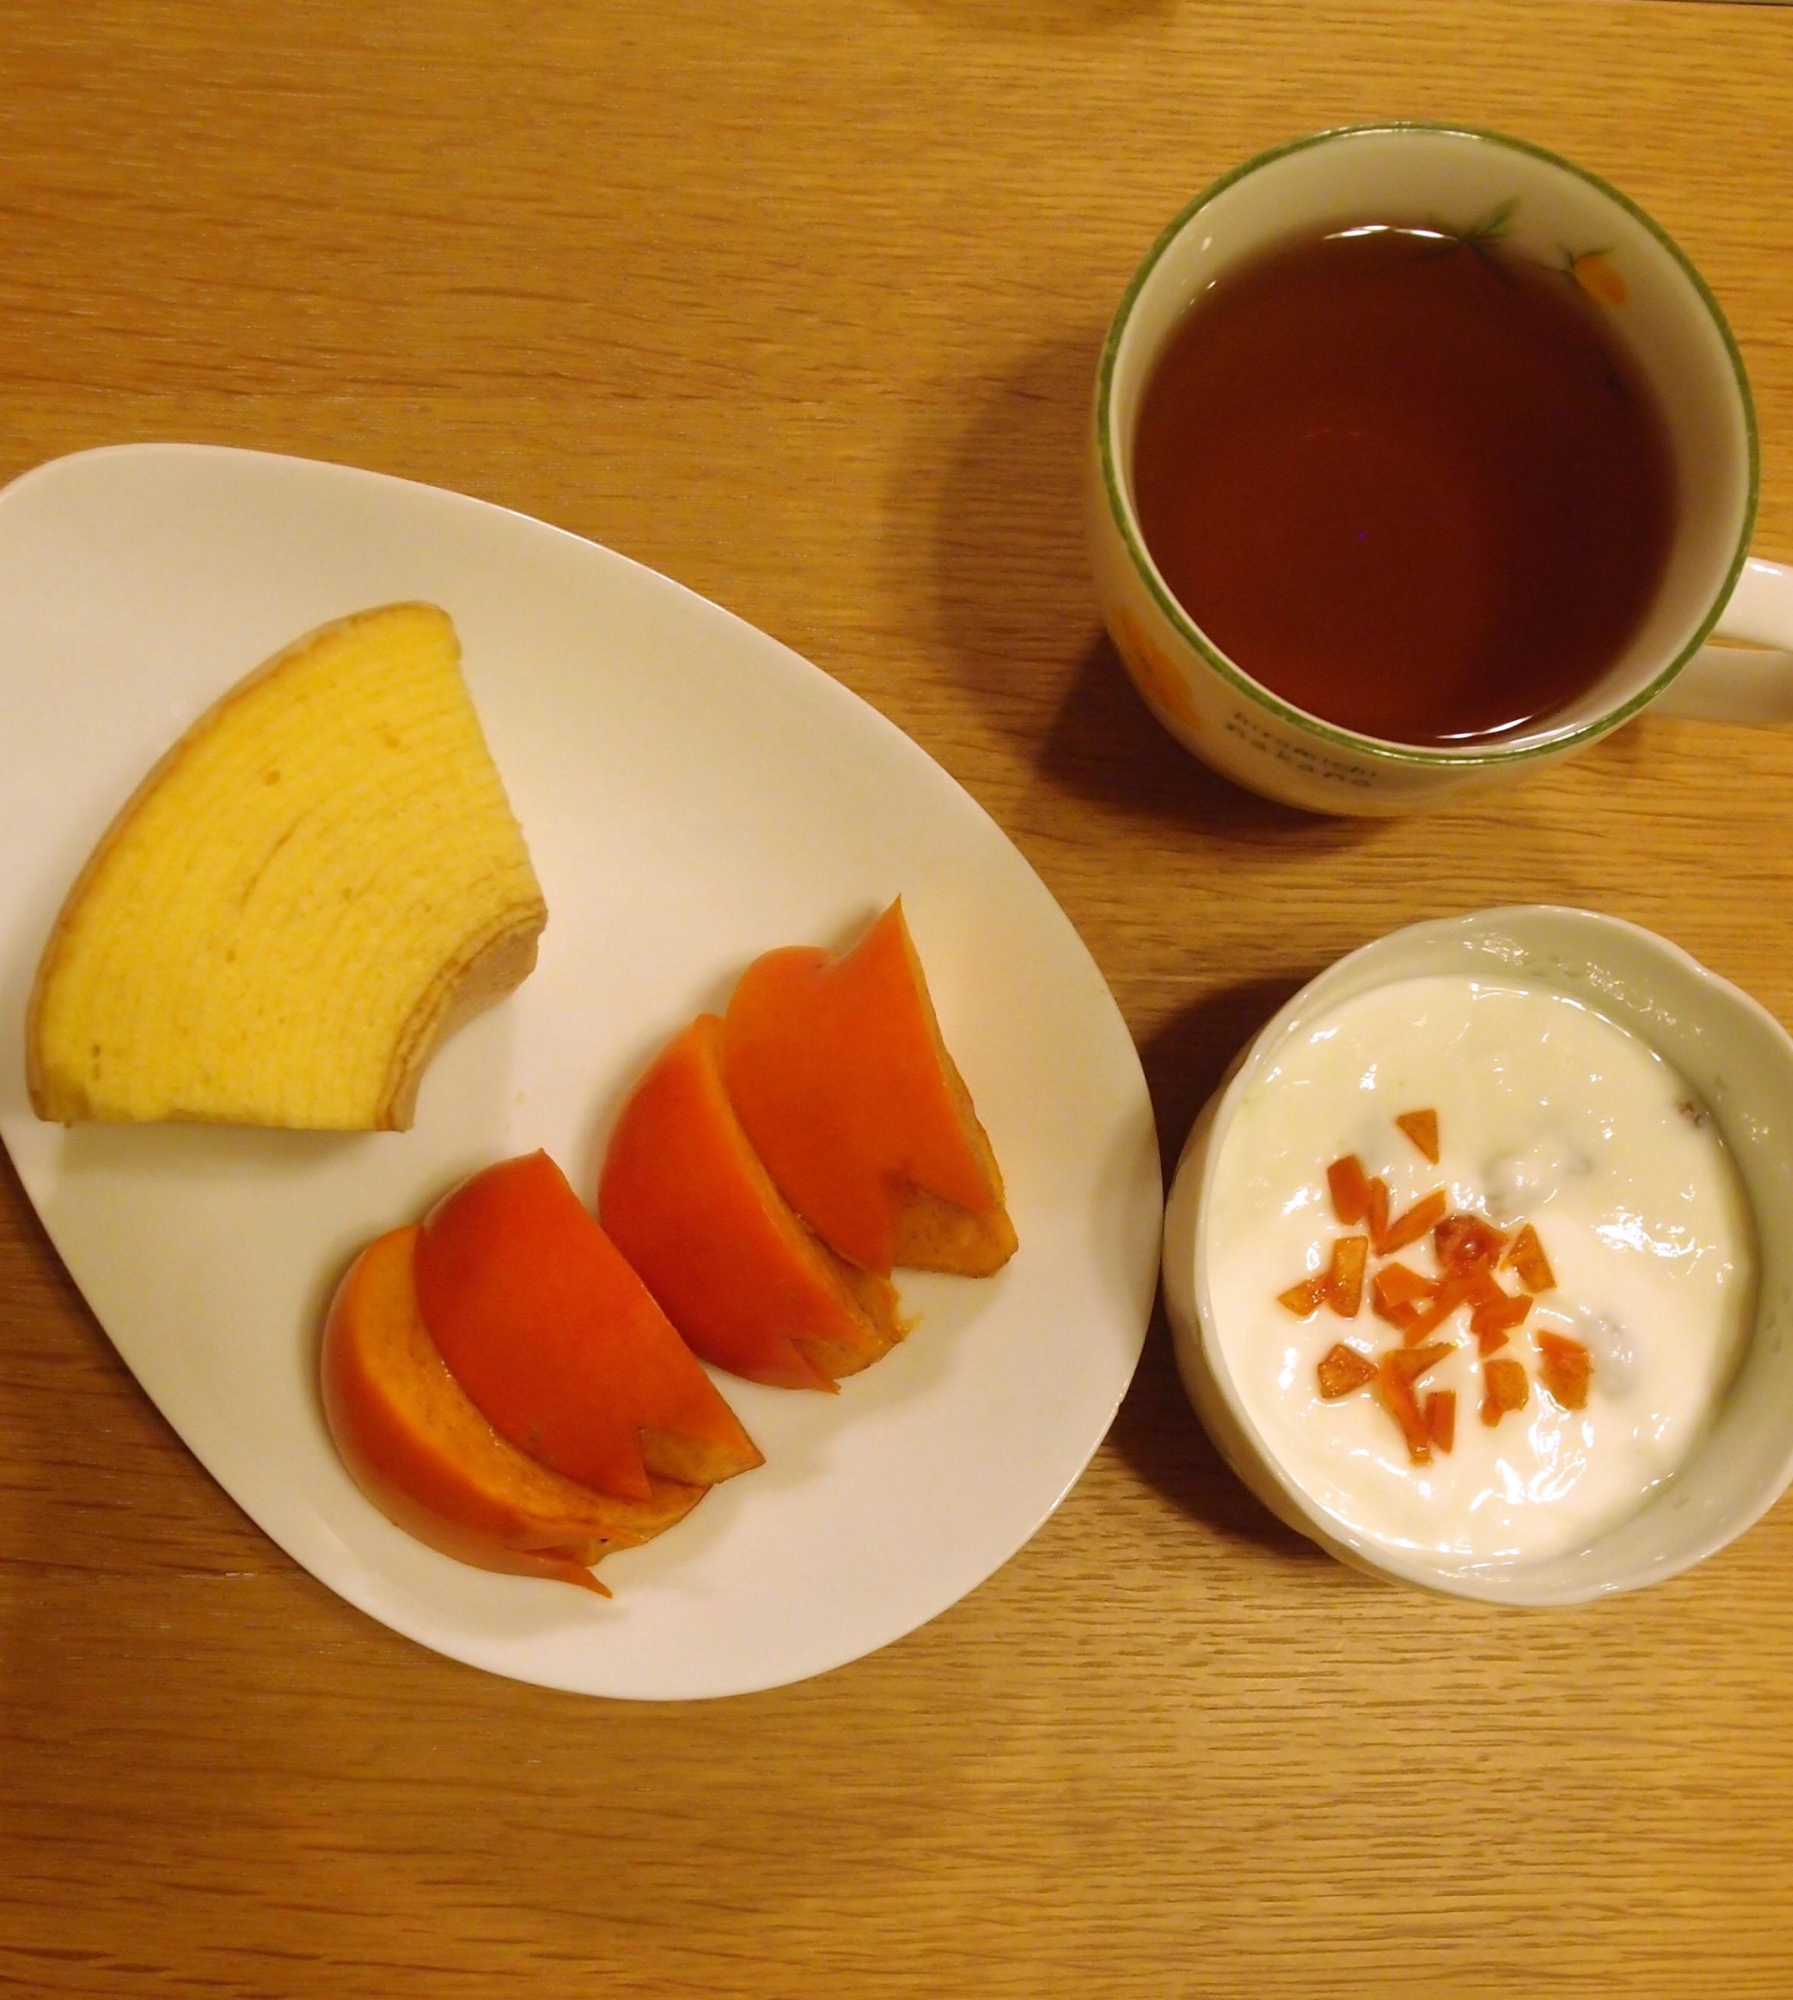 バームクーヘンと紅茶と柿とヨーグルトの朝食セット